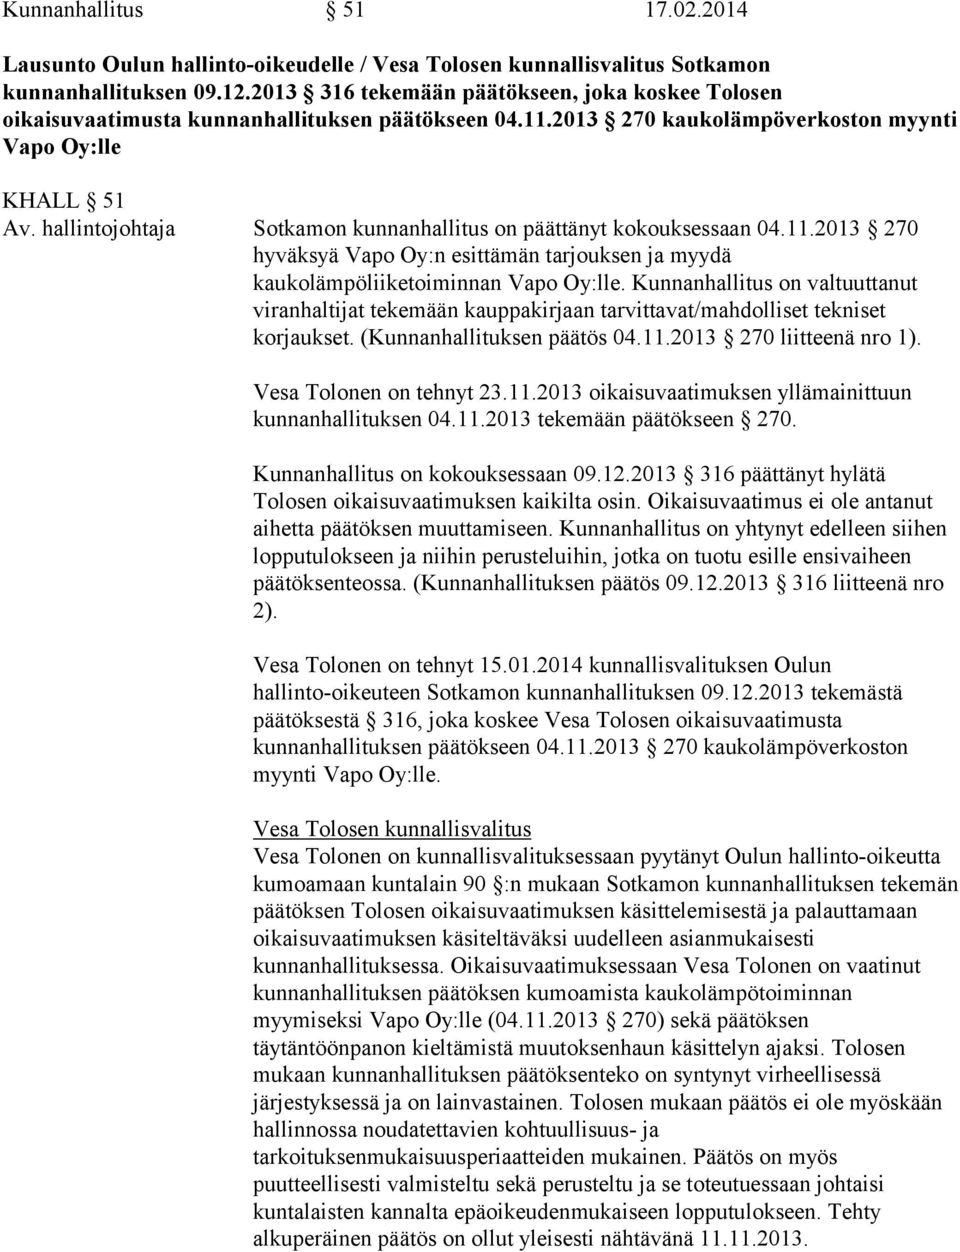 hallintojohtaja Sotkamon kunnanhallitus on päättänyt kokouksessaan 04.11.2013 270 hyväksyä Vapo Oy:n esittämän tarjouksen ja myydä kaukolämpöliiketoiminnan Vapo Oy:lle.